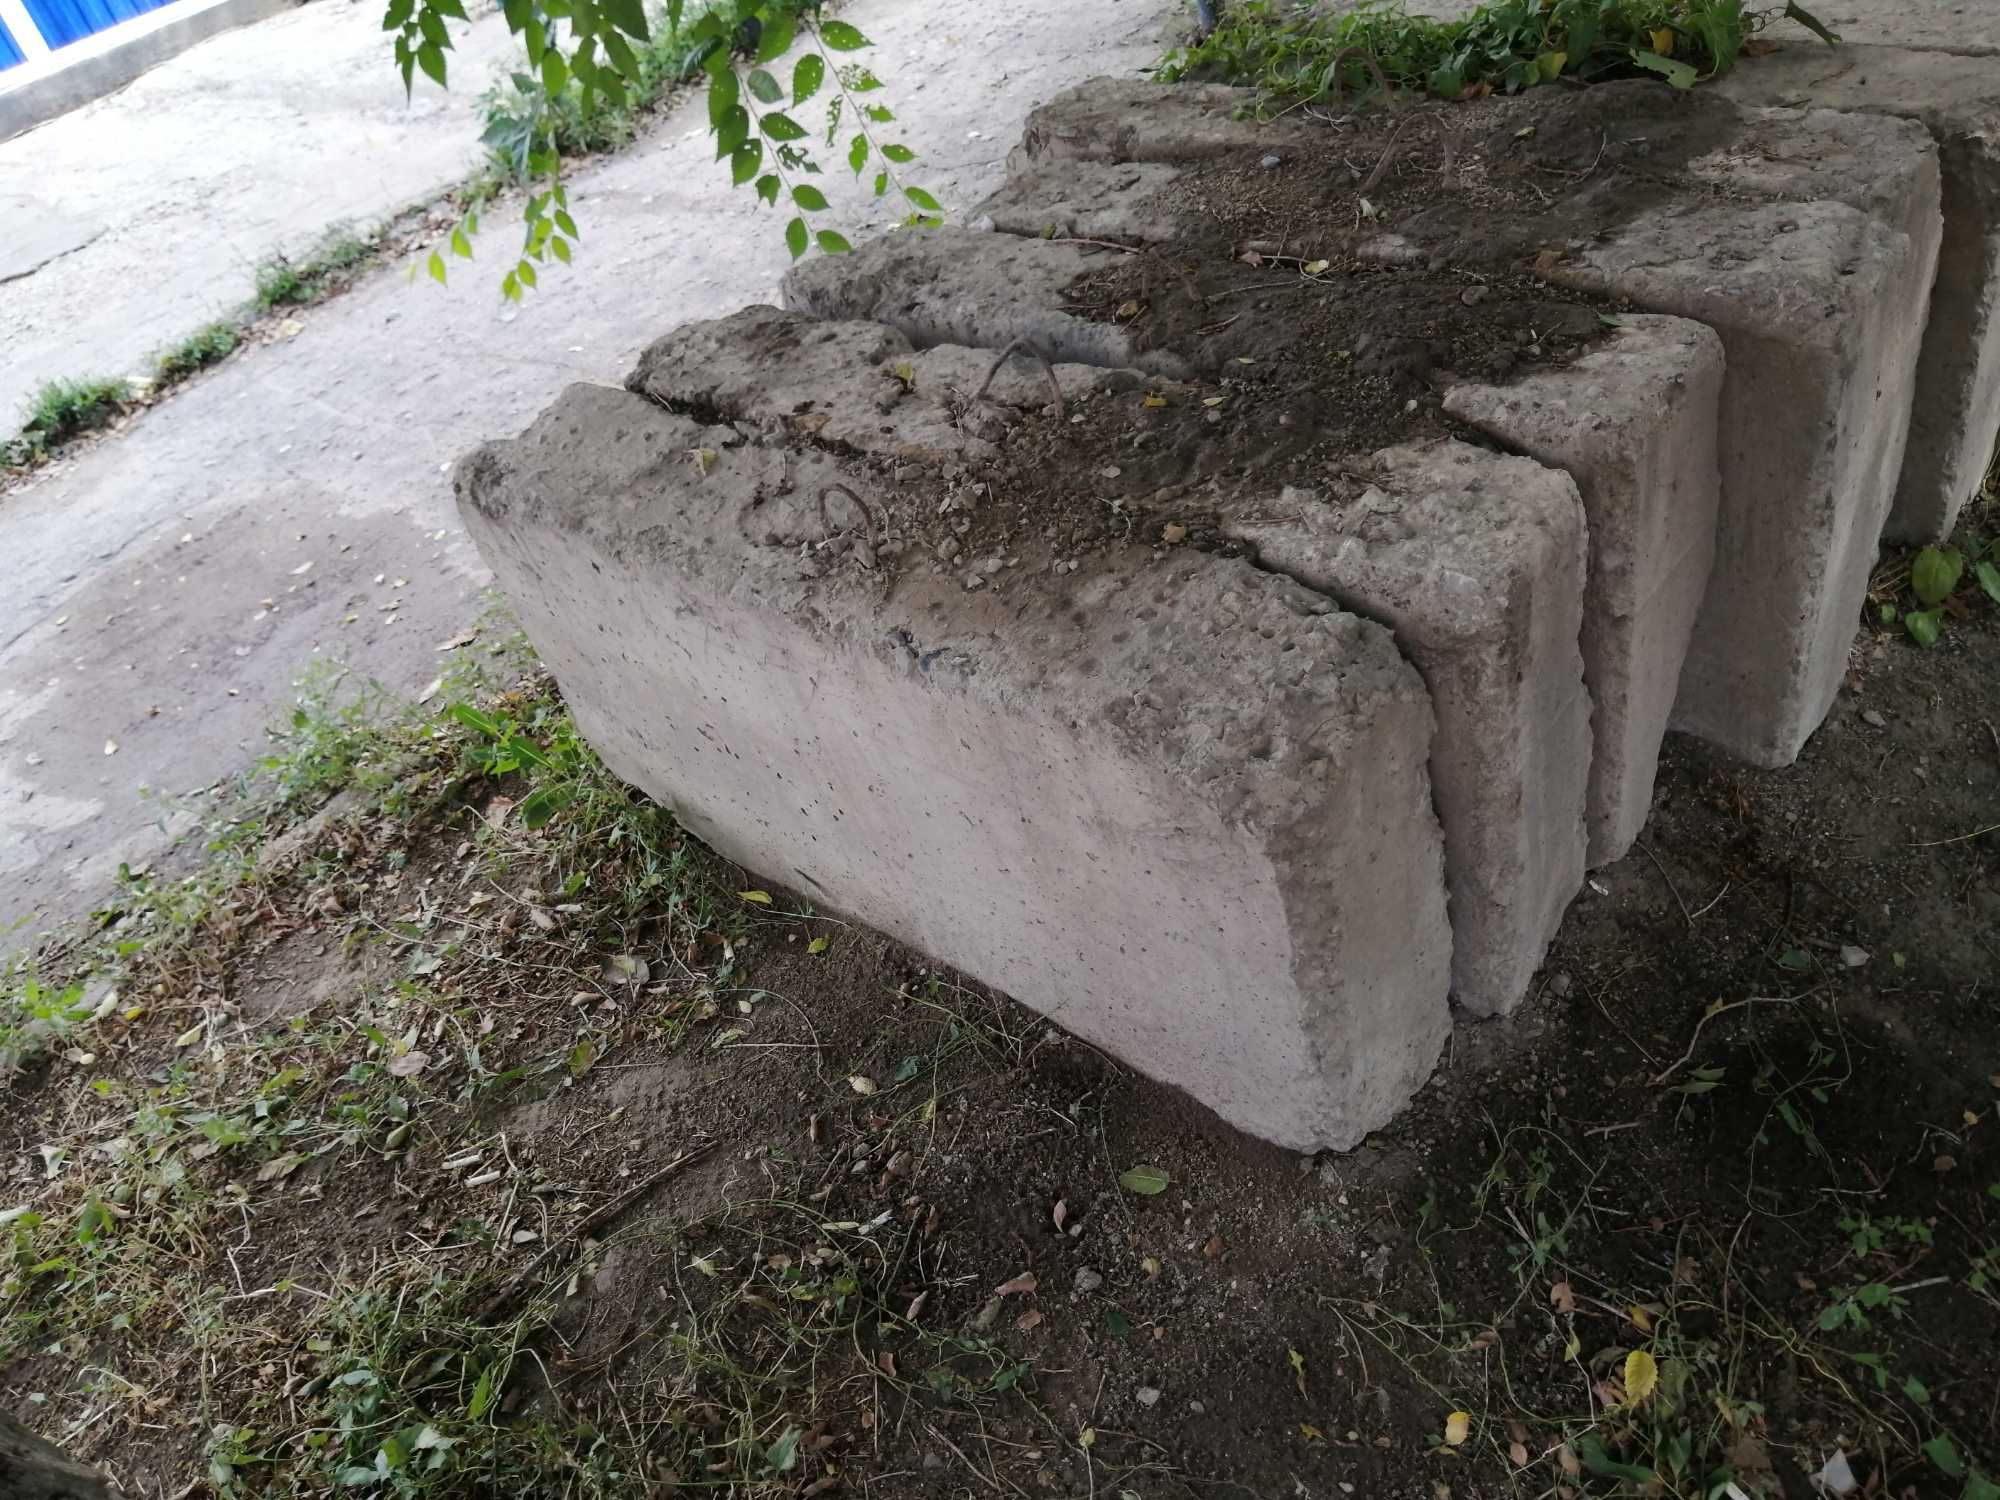 Продам бетонные блоки